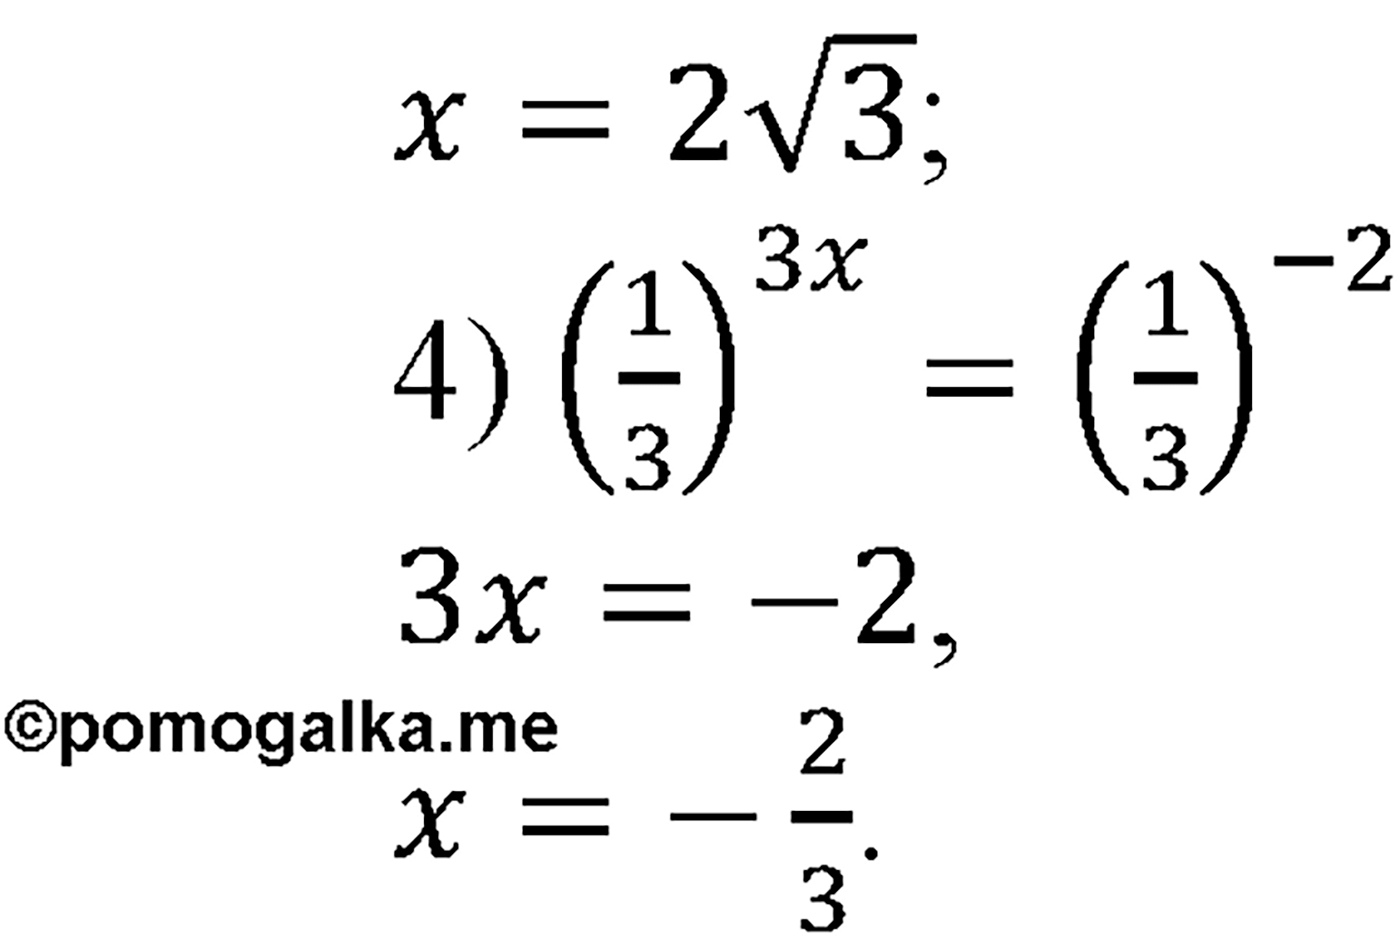 разбор задачи №208 по алгебре за 10-11 класс из учебника Алимова, Колягина